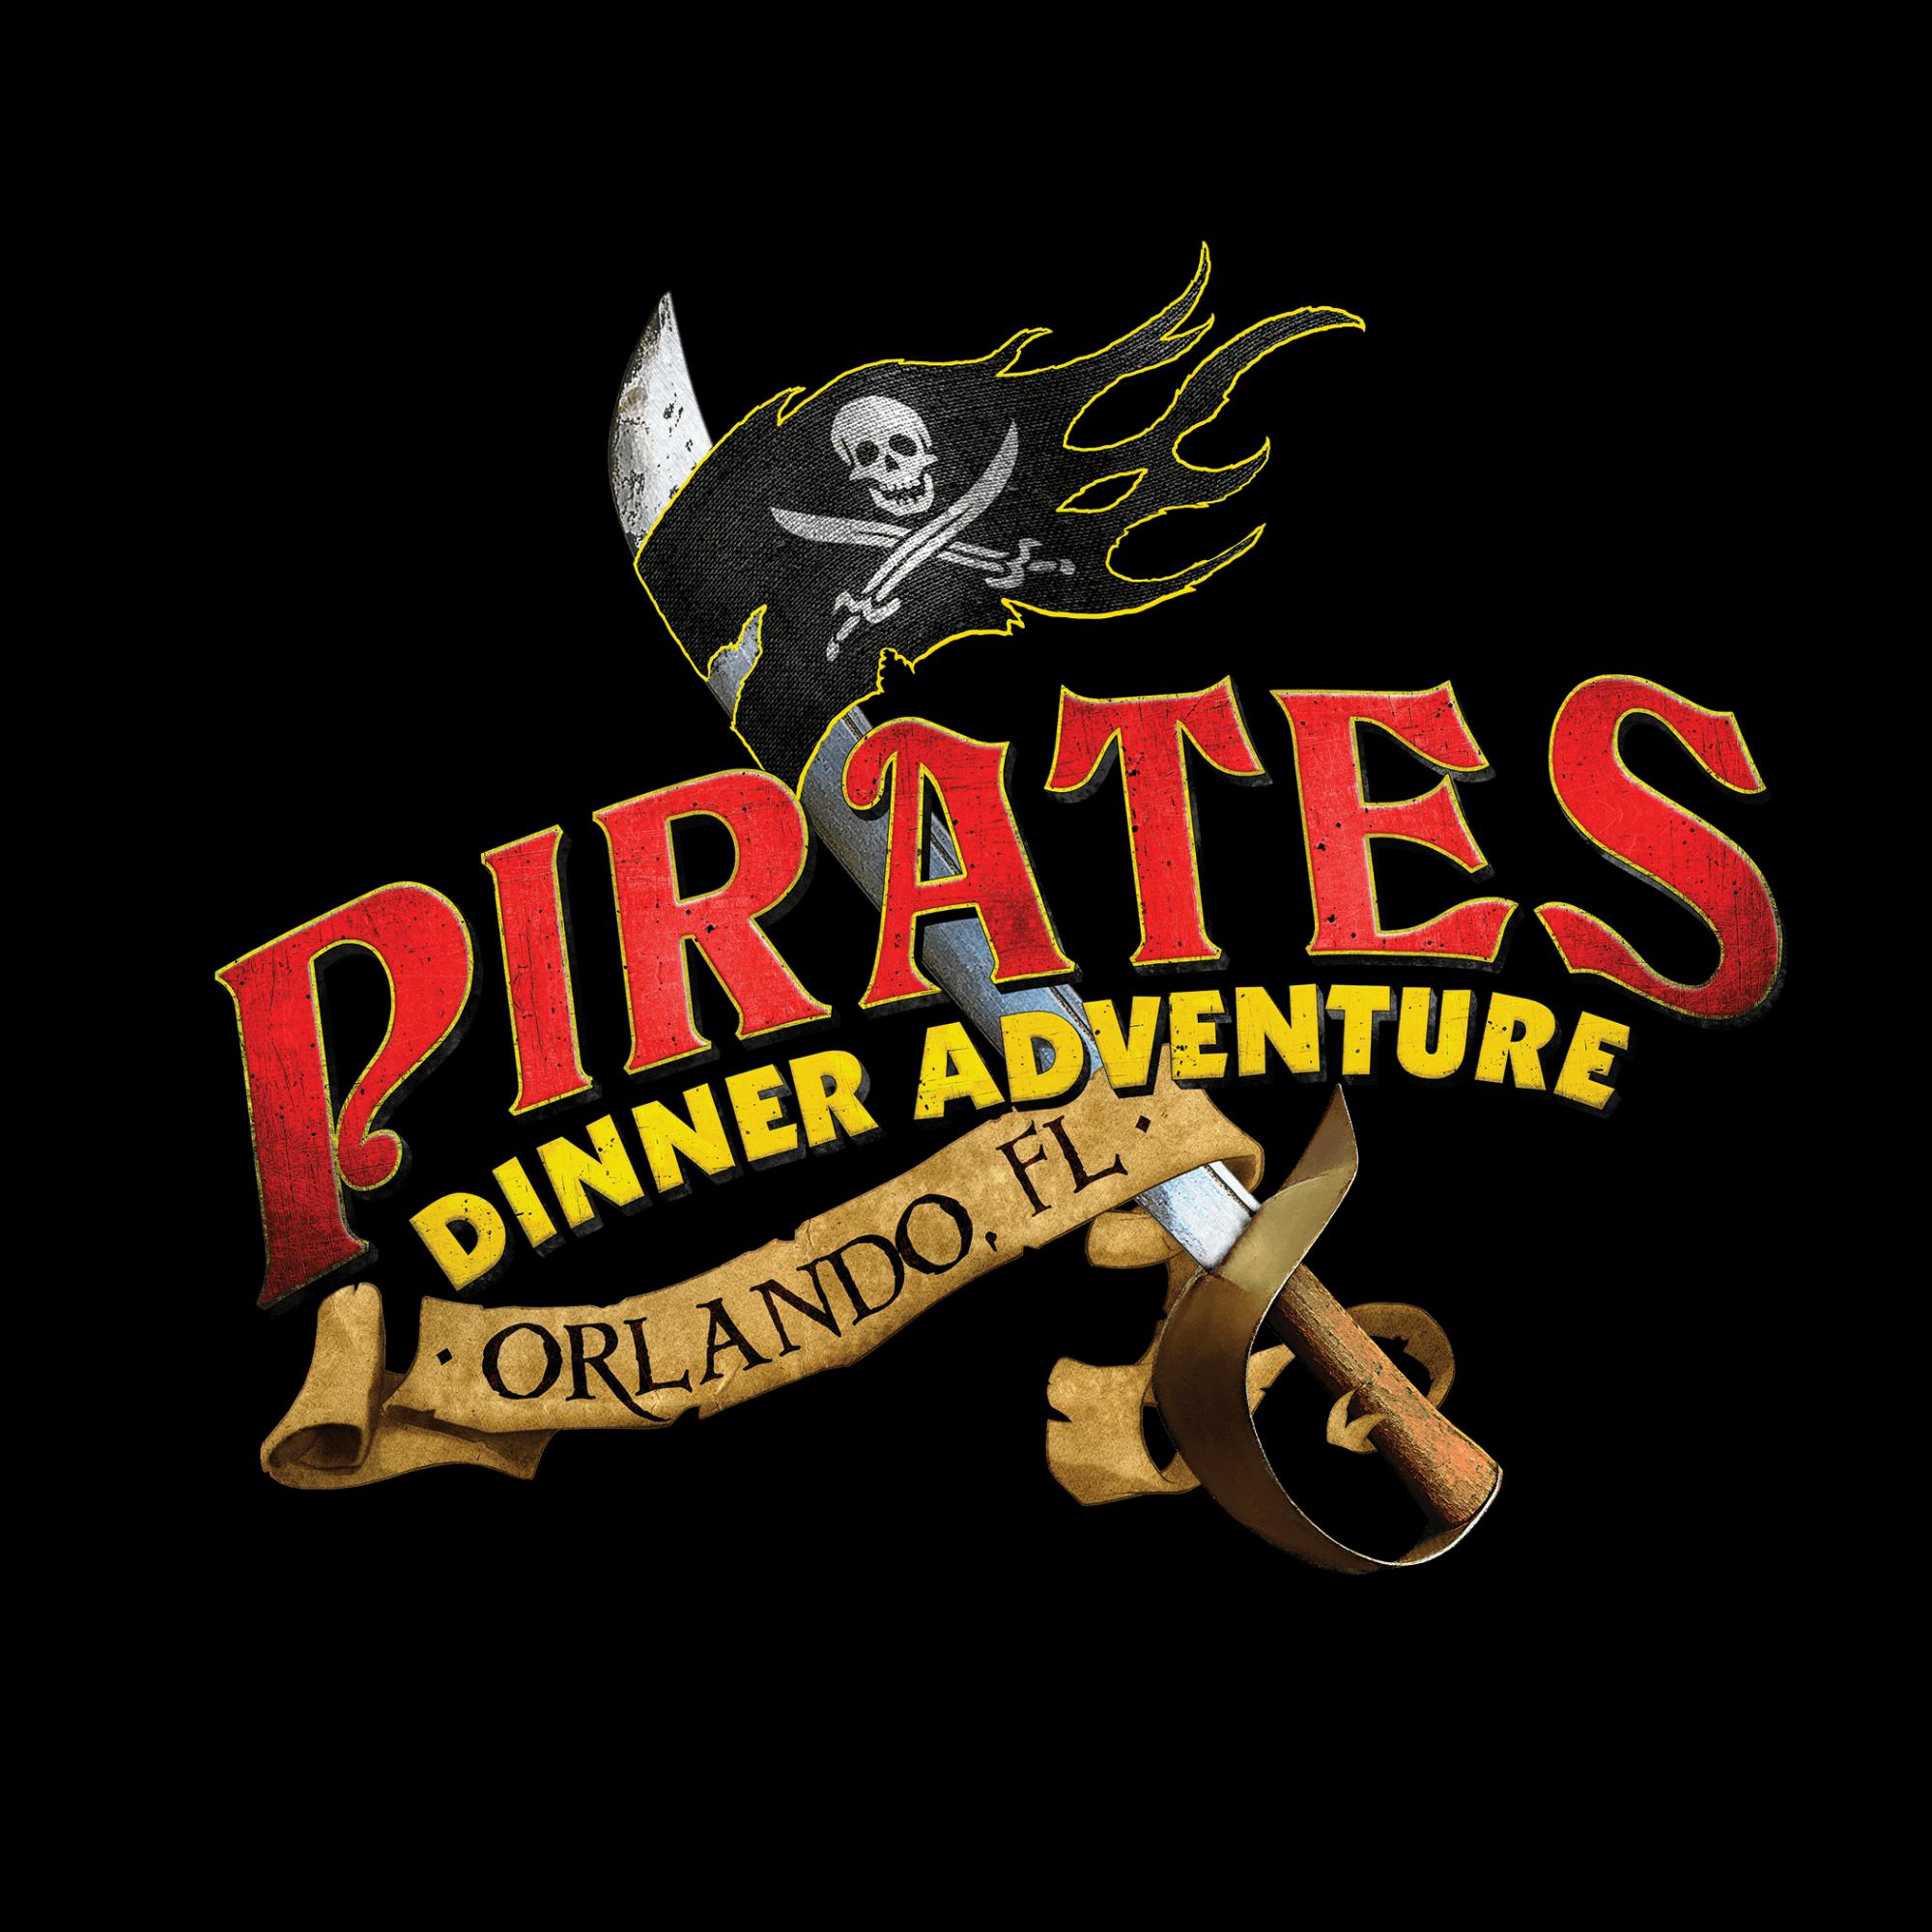 Schatzkarten für das Piraten-Dinner-Abenteuer in Orlando